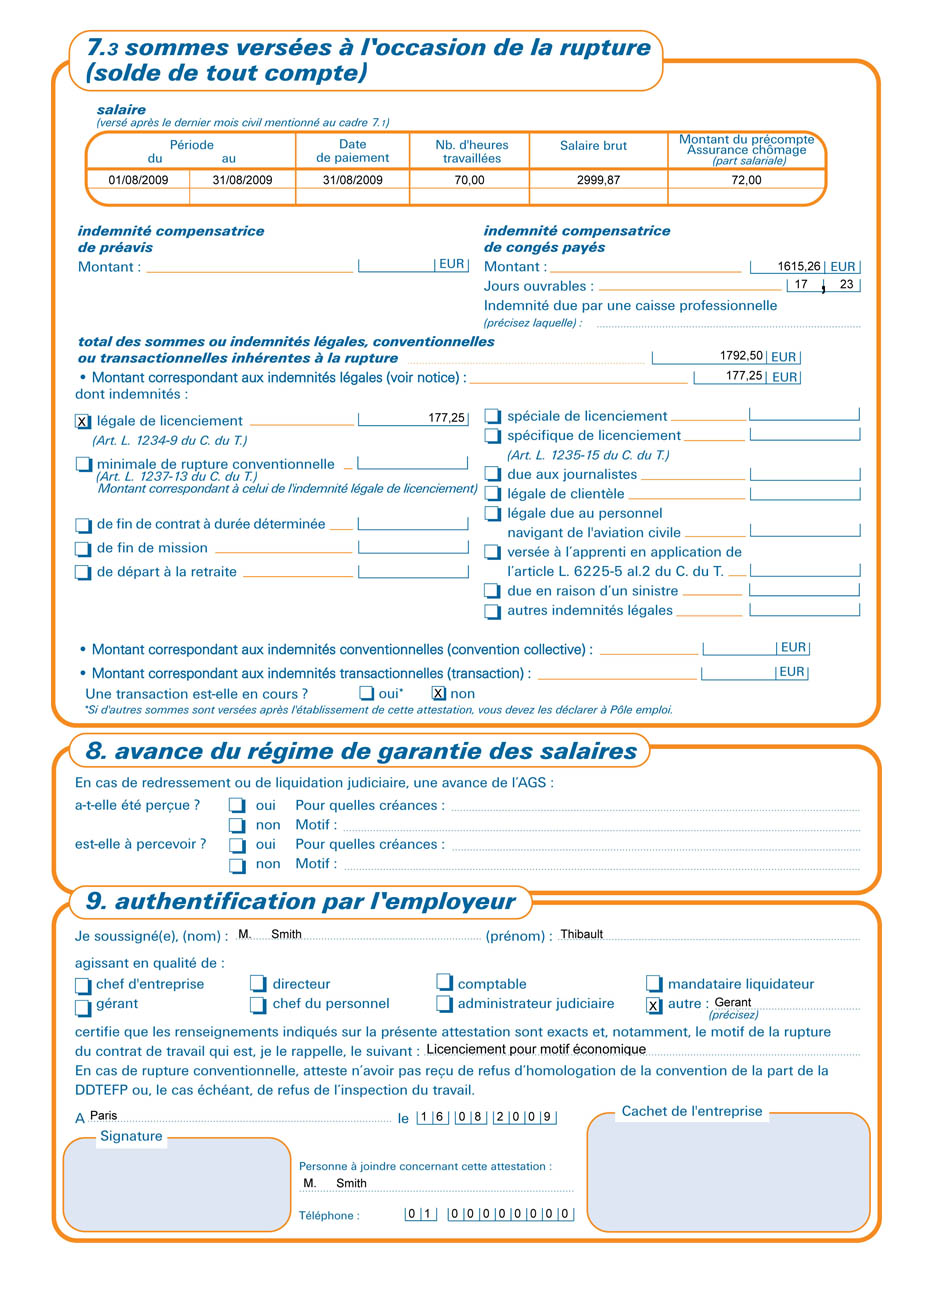 formulaire attestation employeur p u00f4le emploi